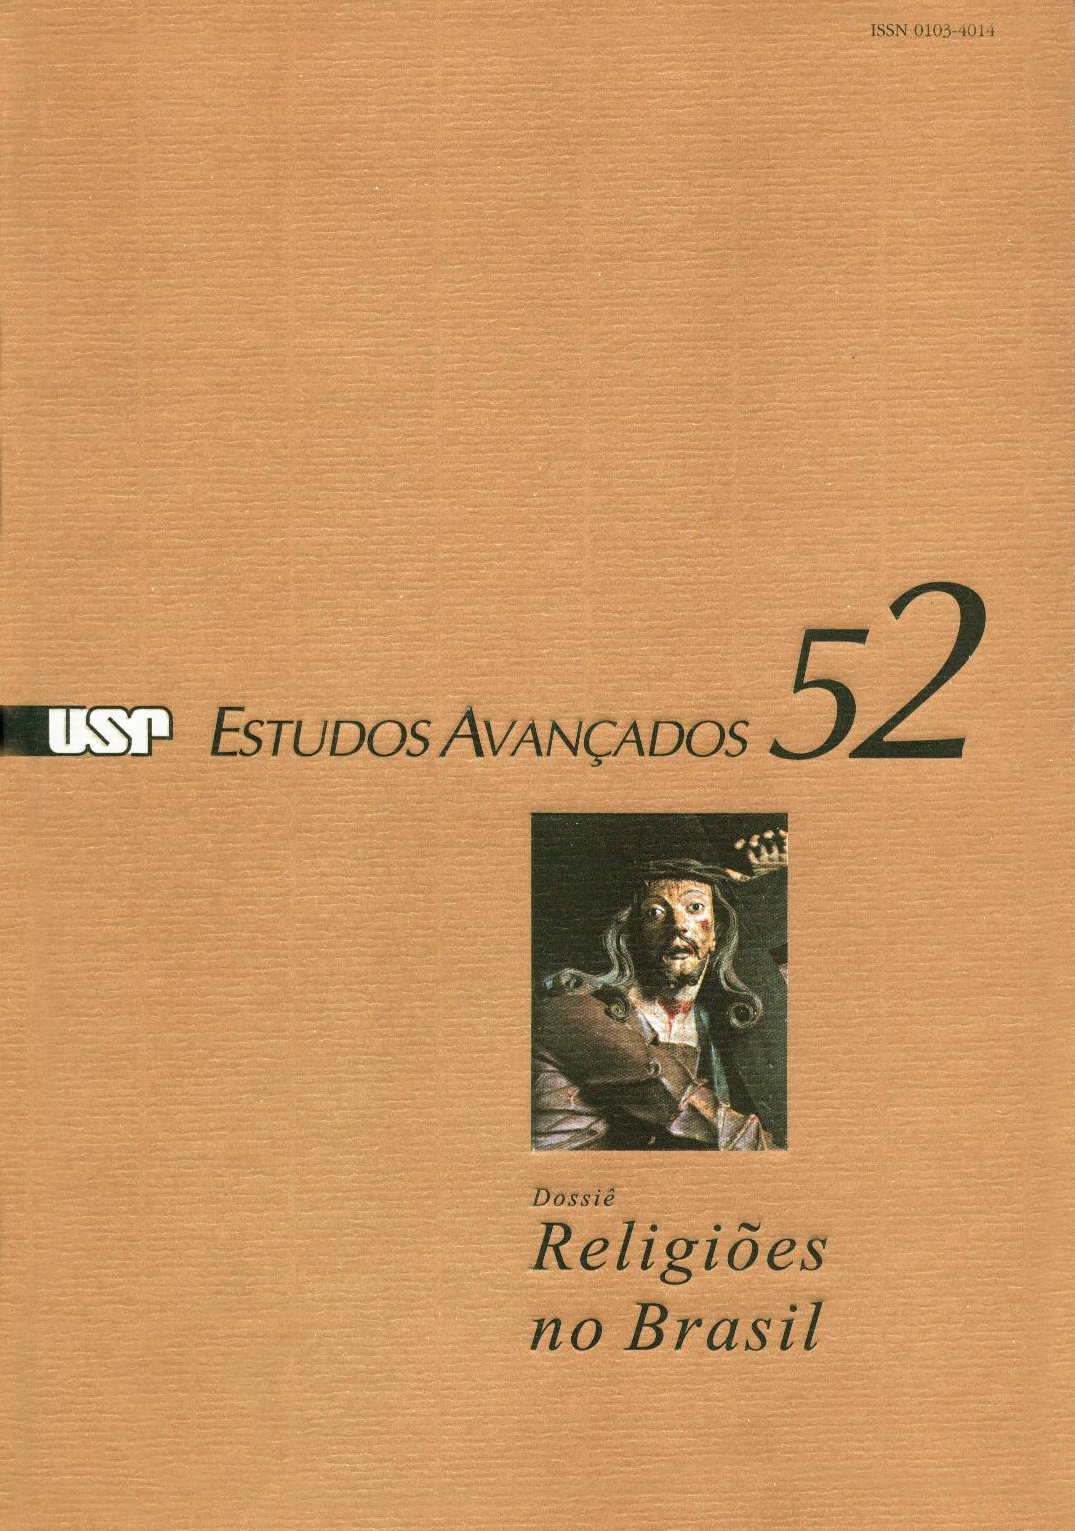 Capa Revista Estudos Avançados v18 n52